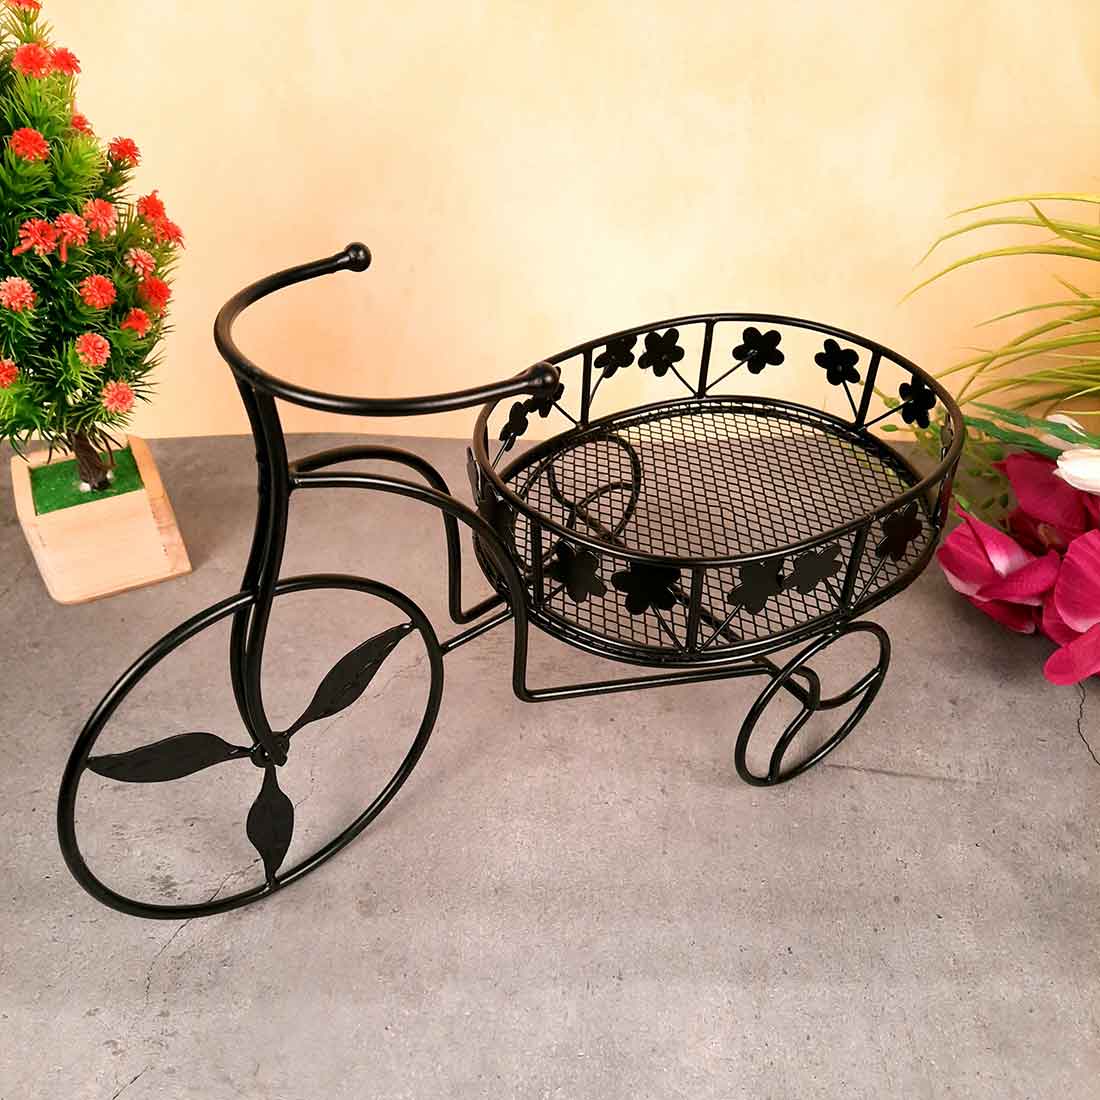 Fruit Basket | Multipurpose Basket - Rickshaw Design - For Fruits, Vegetables, Kitchen & Dining Table Decor - 15 Inch - Apkamart#Style_Pack of 1